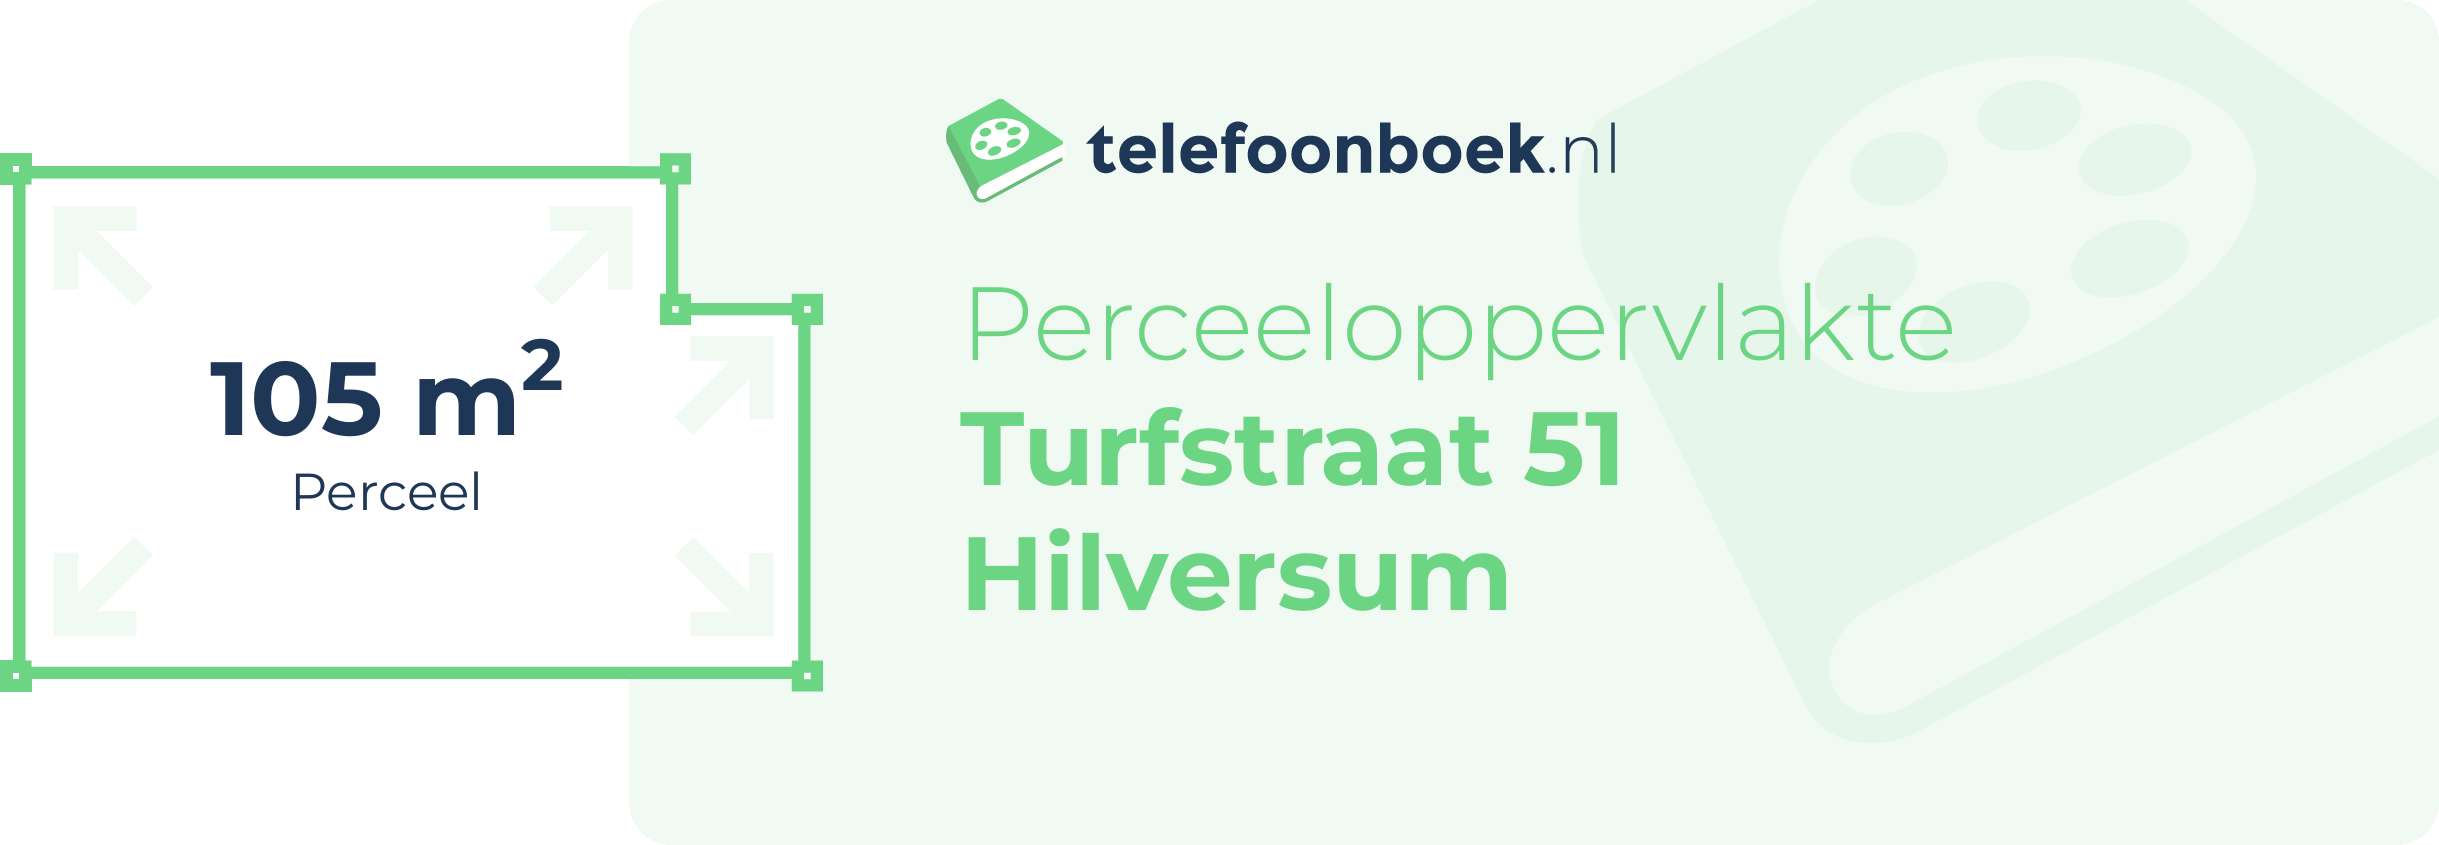 Perceeloppervlakte Turfstraat 51 Hilversum